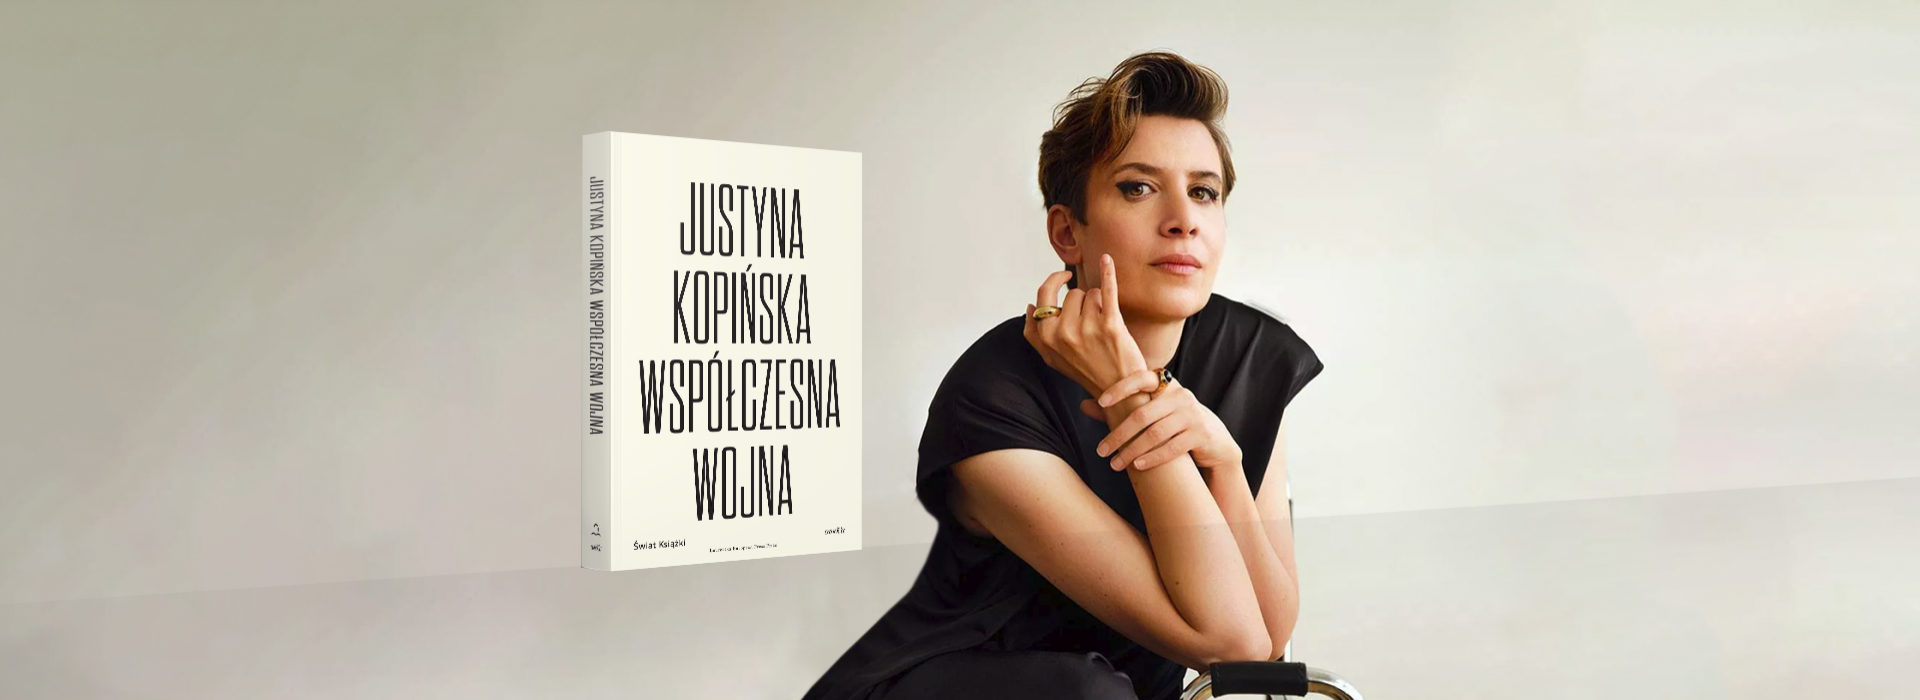 Justyna Kopińska o swojej książce "Współczesna wojna"